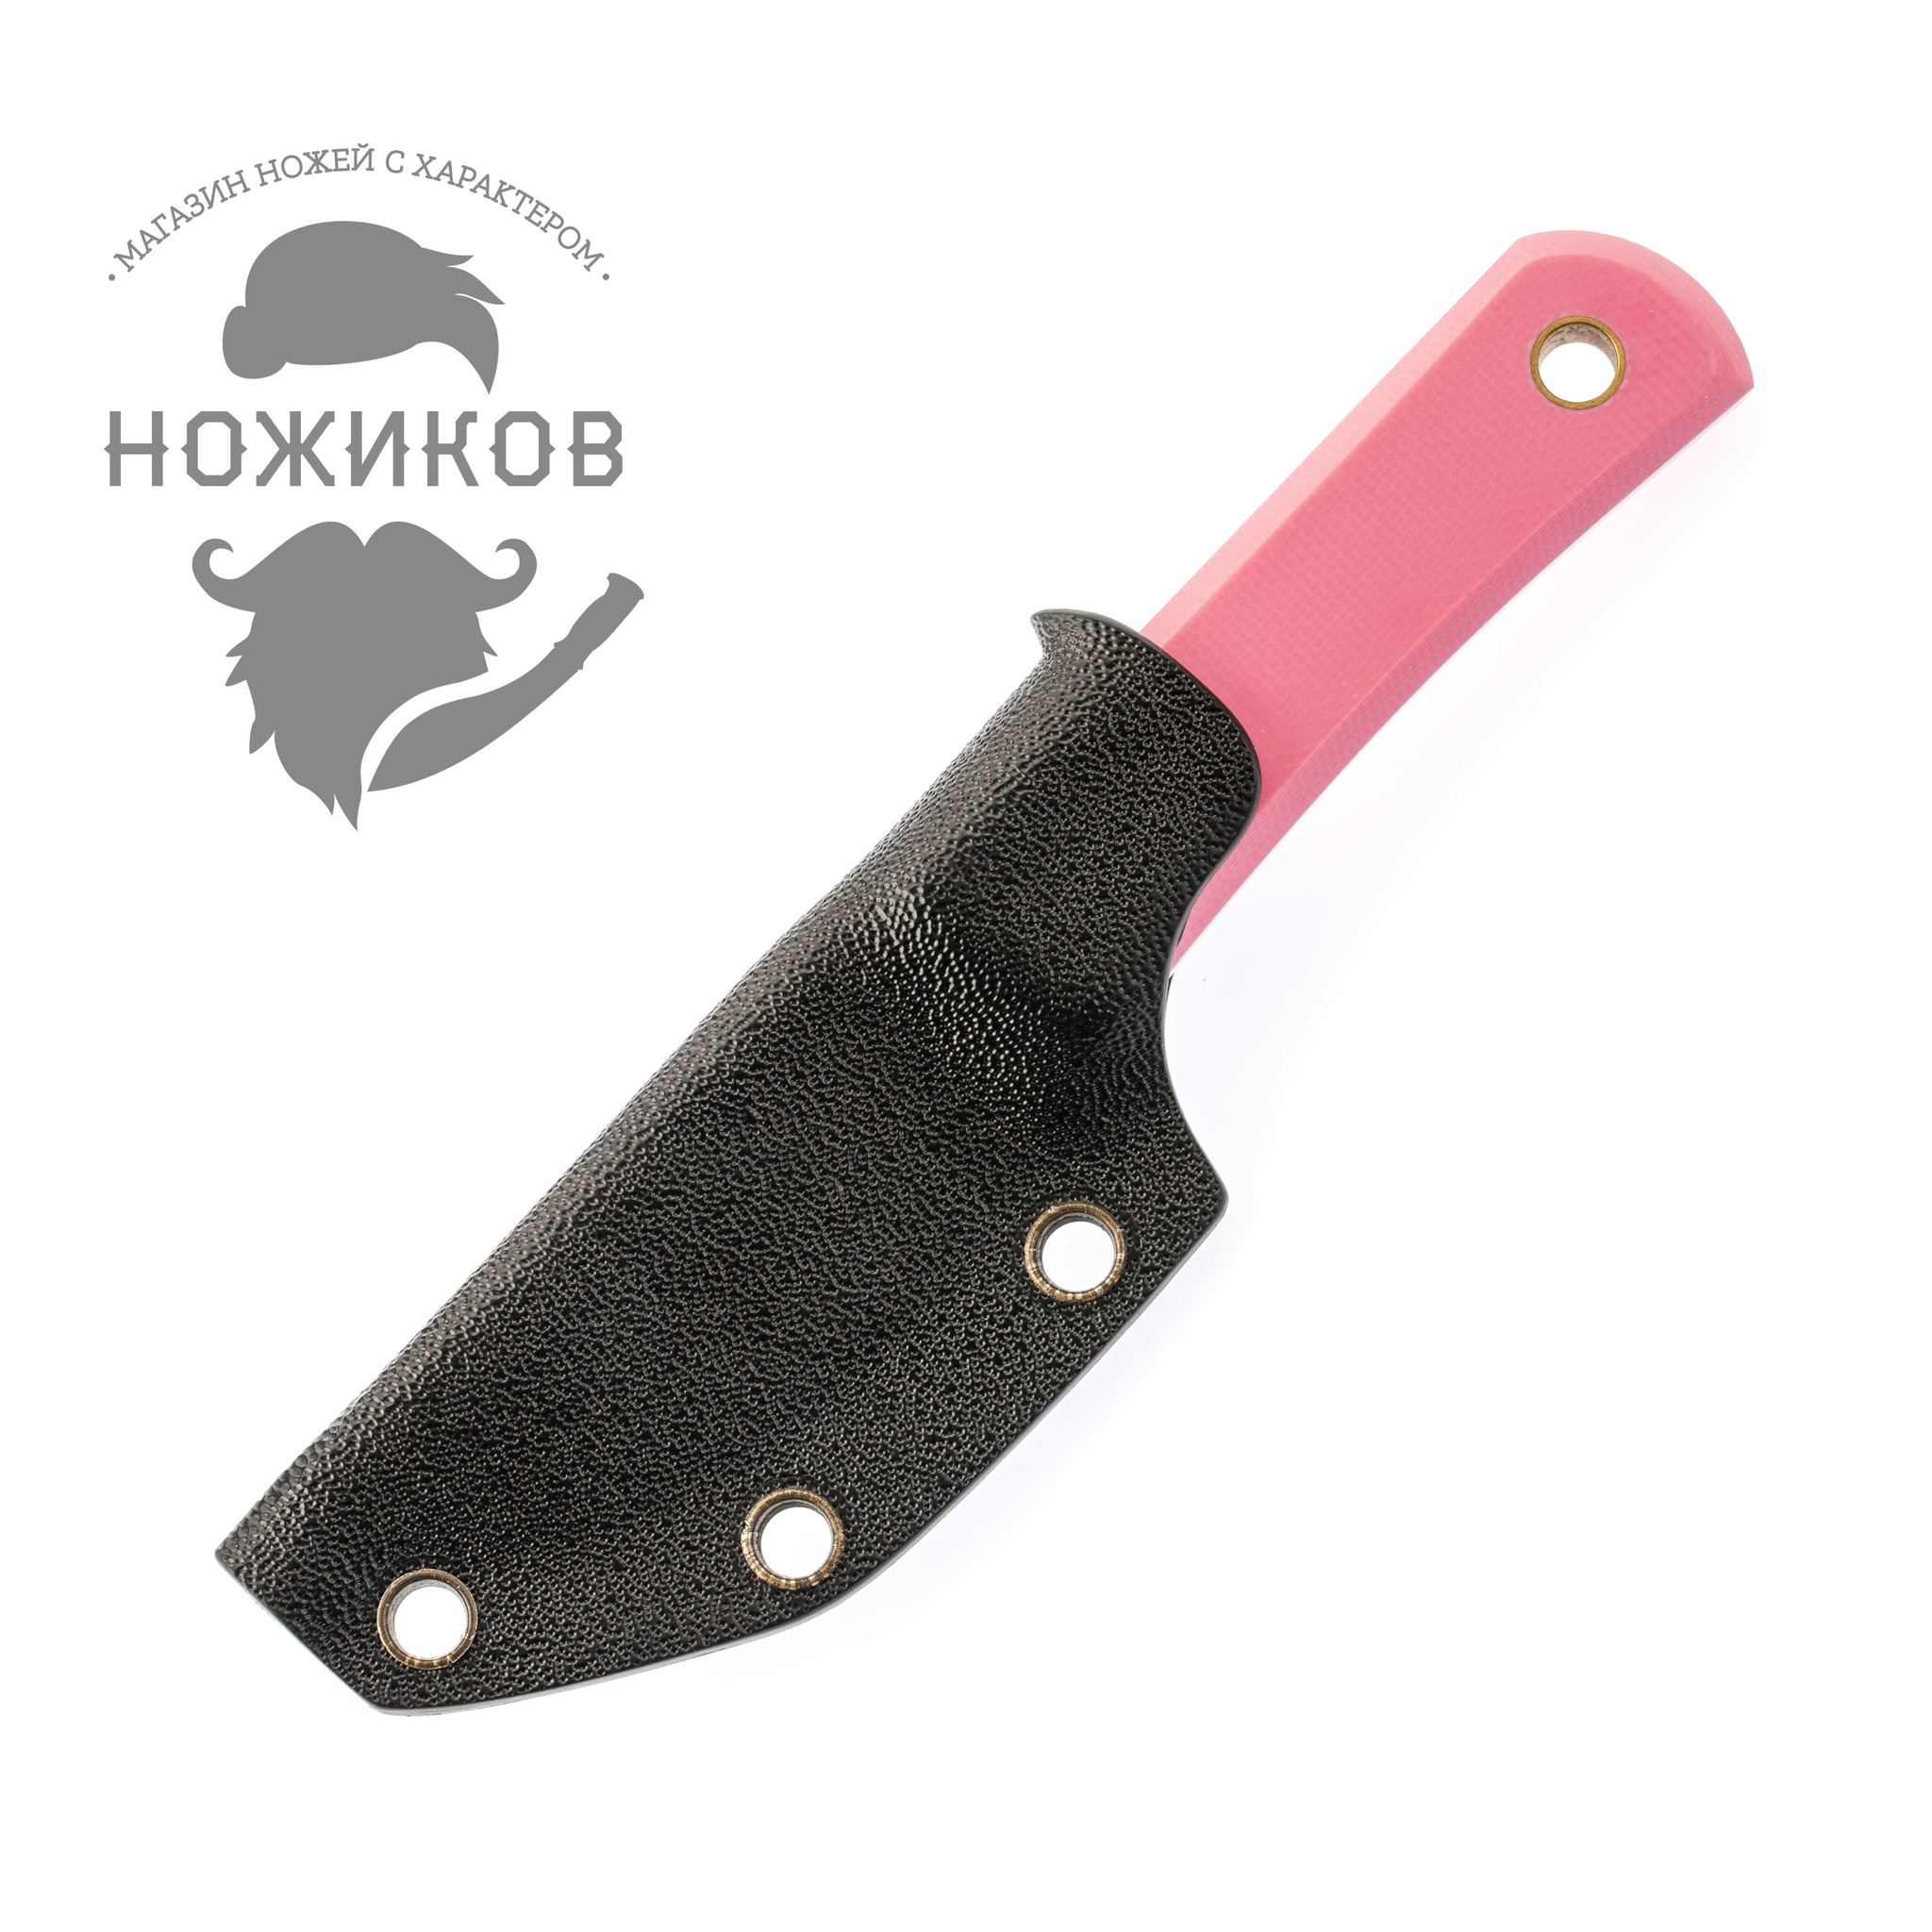 Нож Колибри, сталь N690, рукоять G10 розовая - фото 6